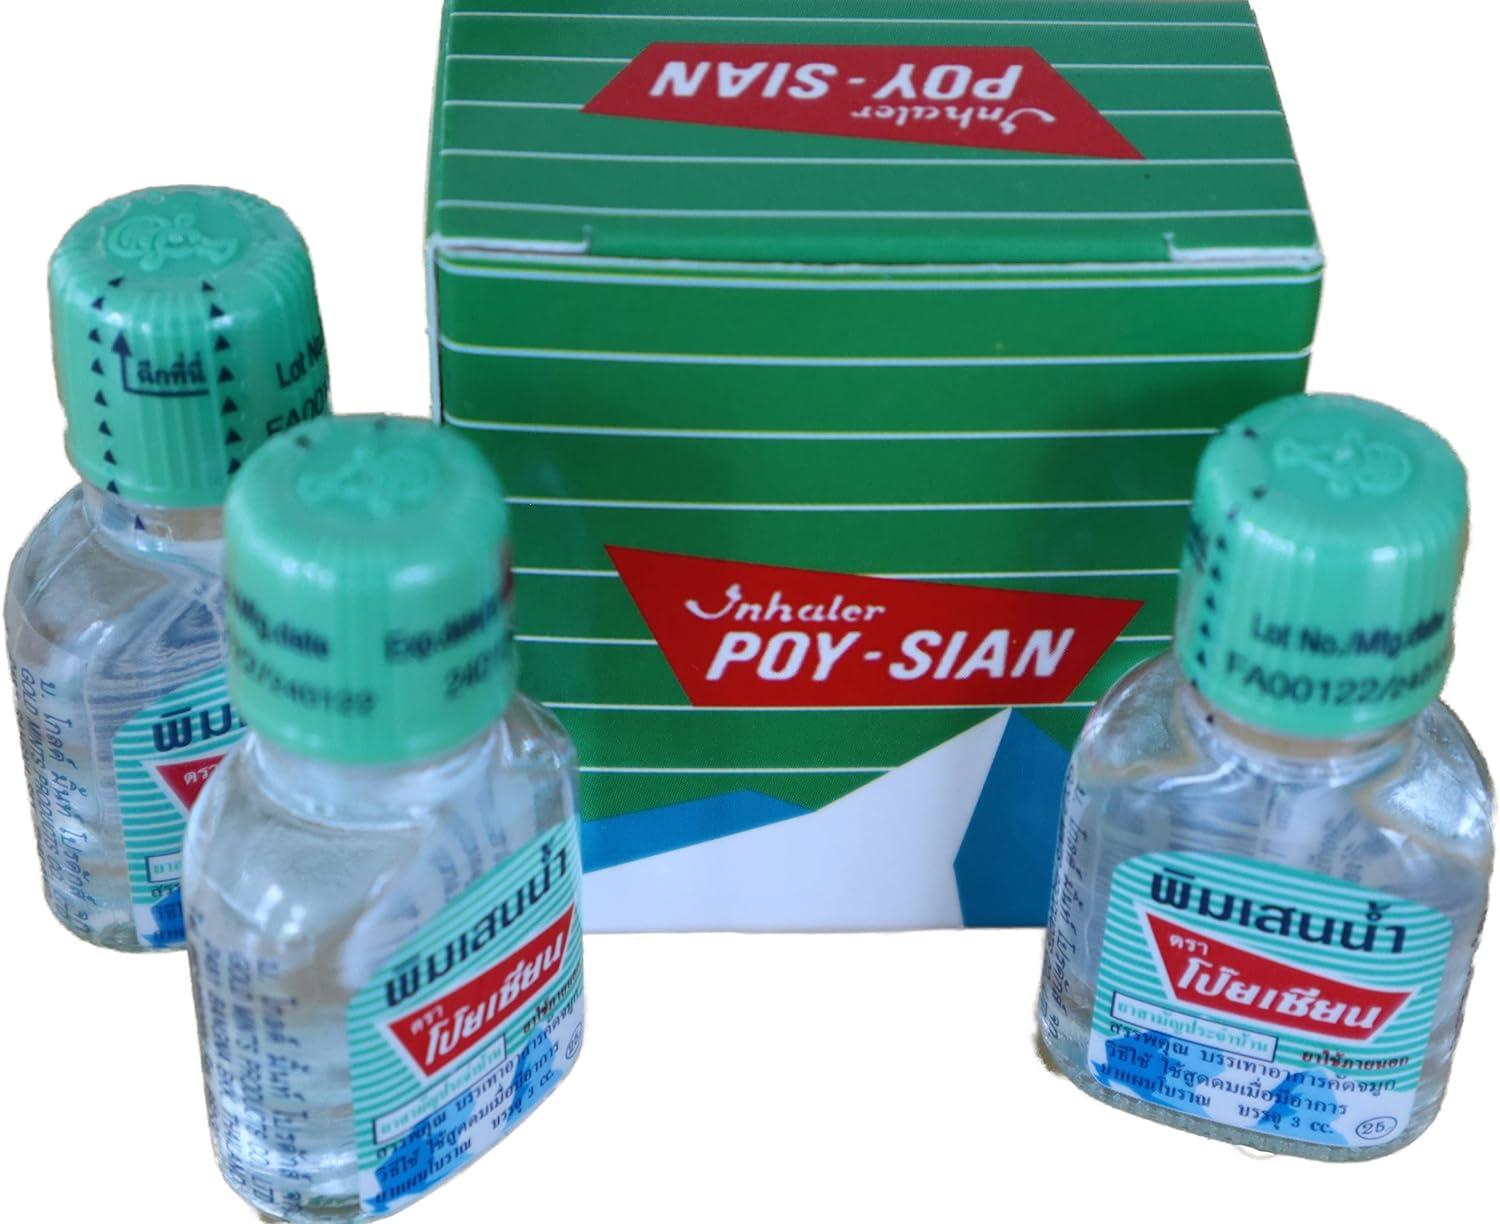 POY-SIAN Thai PIM-Saen Balm Oil 3ml (Pack of 3)